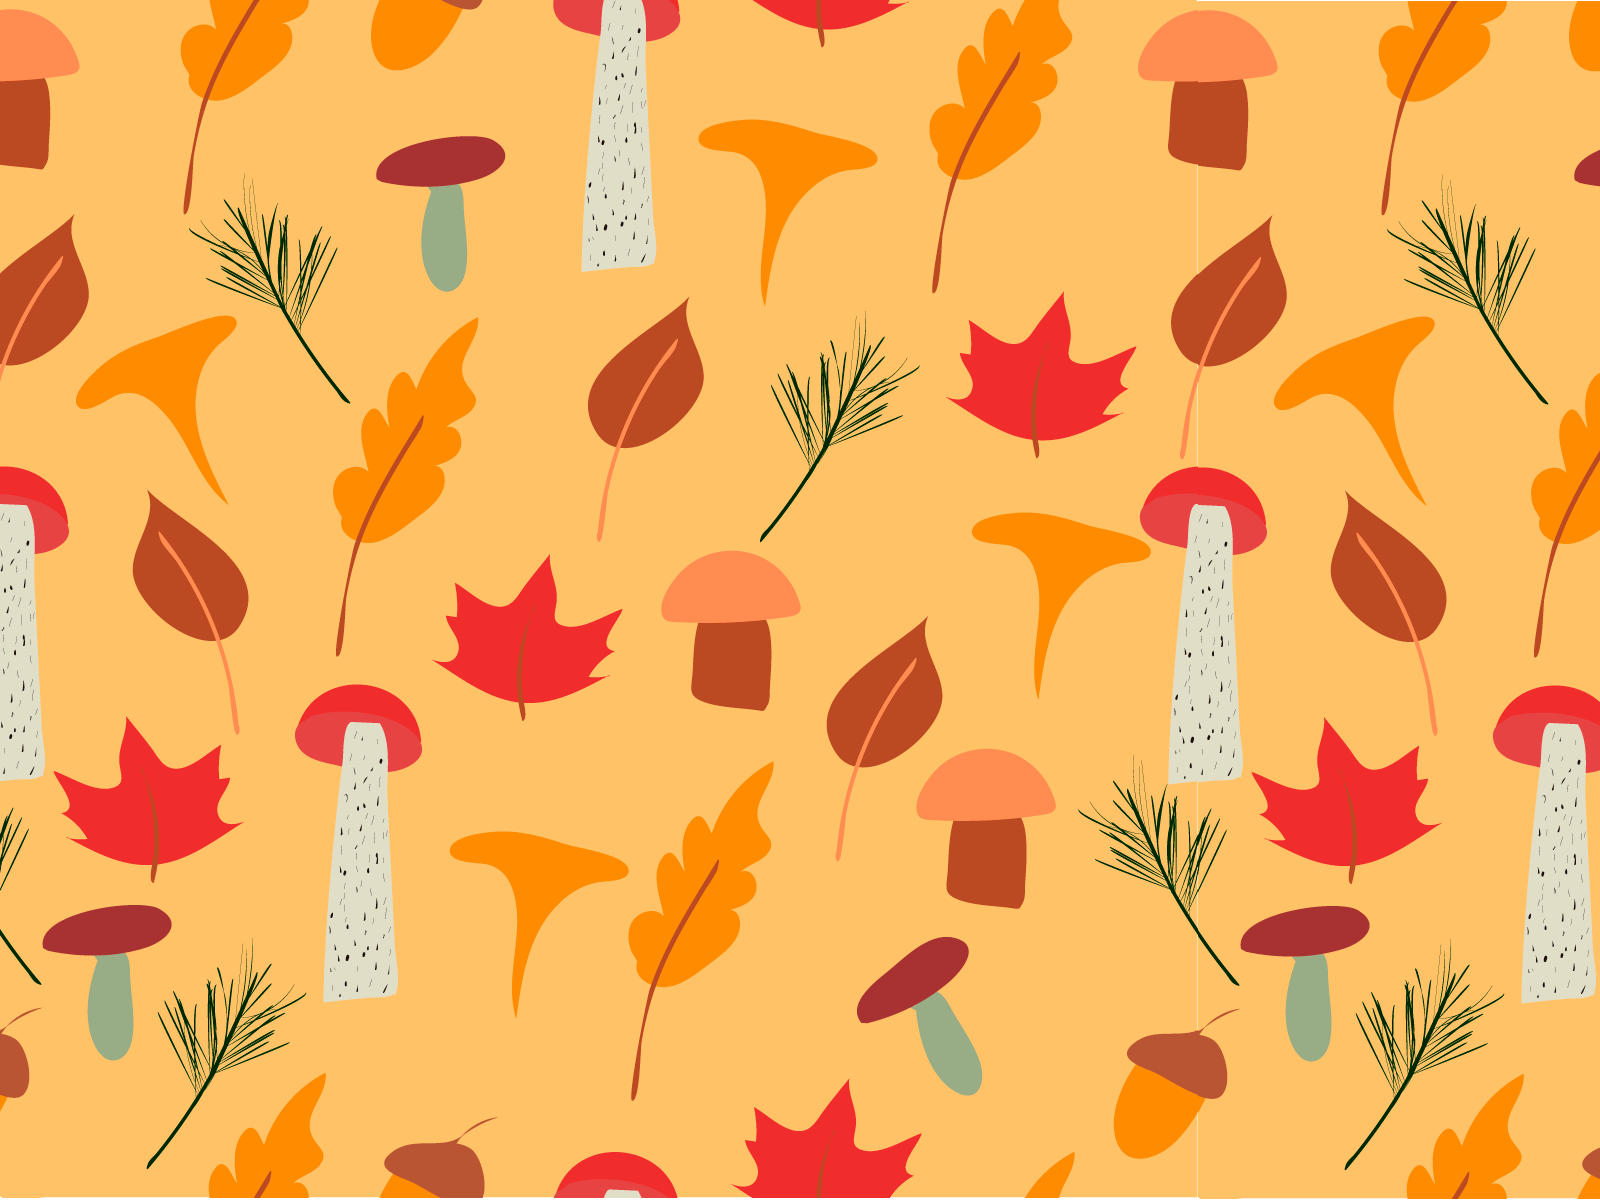 Autumn pattern by Natallia Bobrova on Dribbble